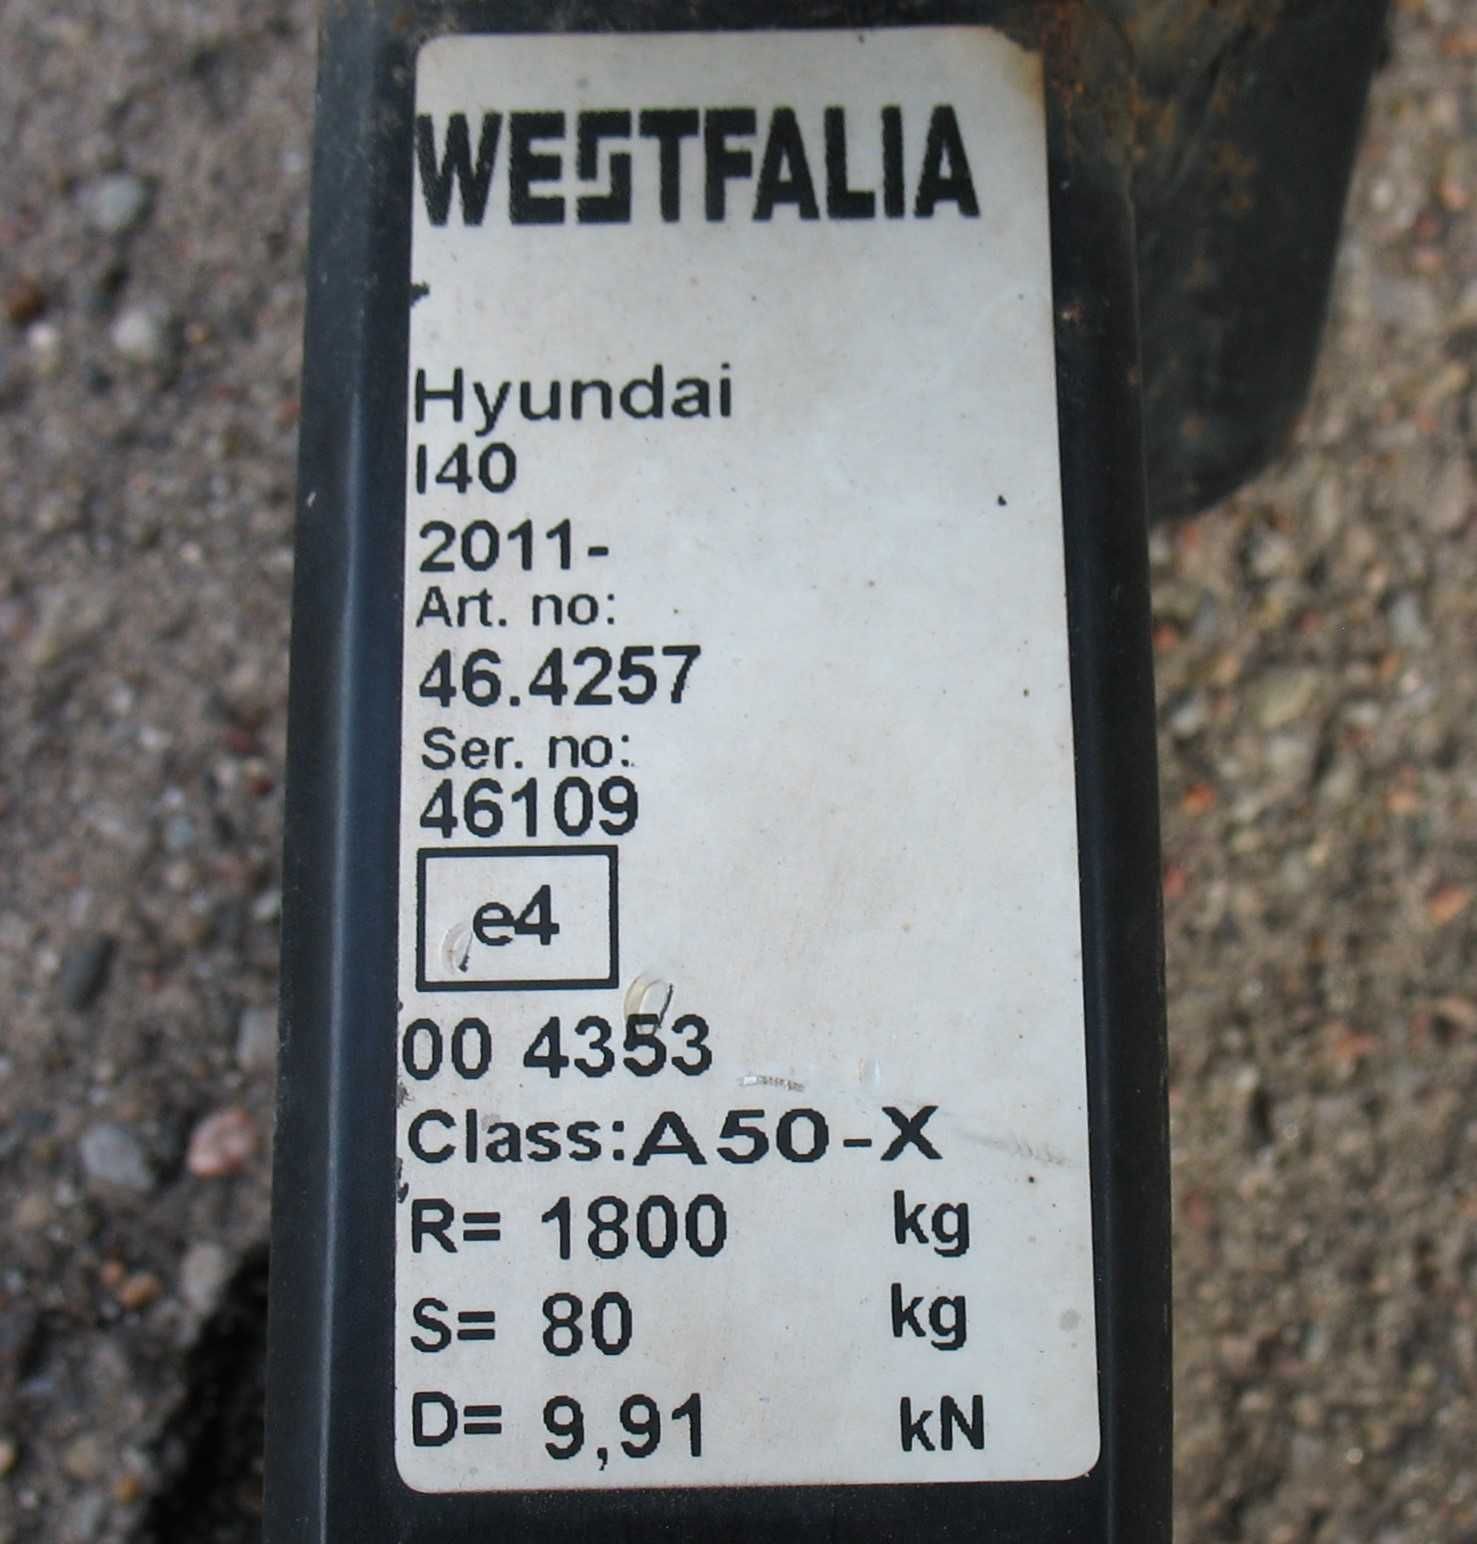 Hyundai i40 CV Hak Holowniczy Westfalia wypinany Opis